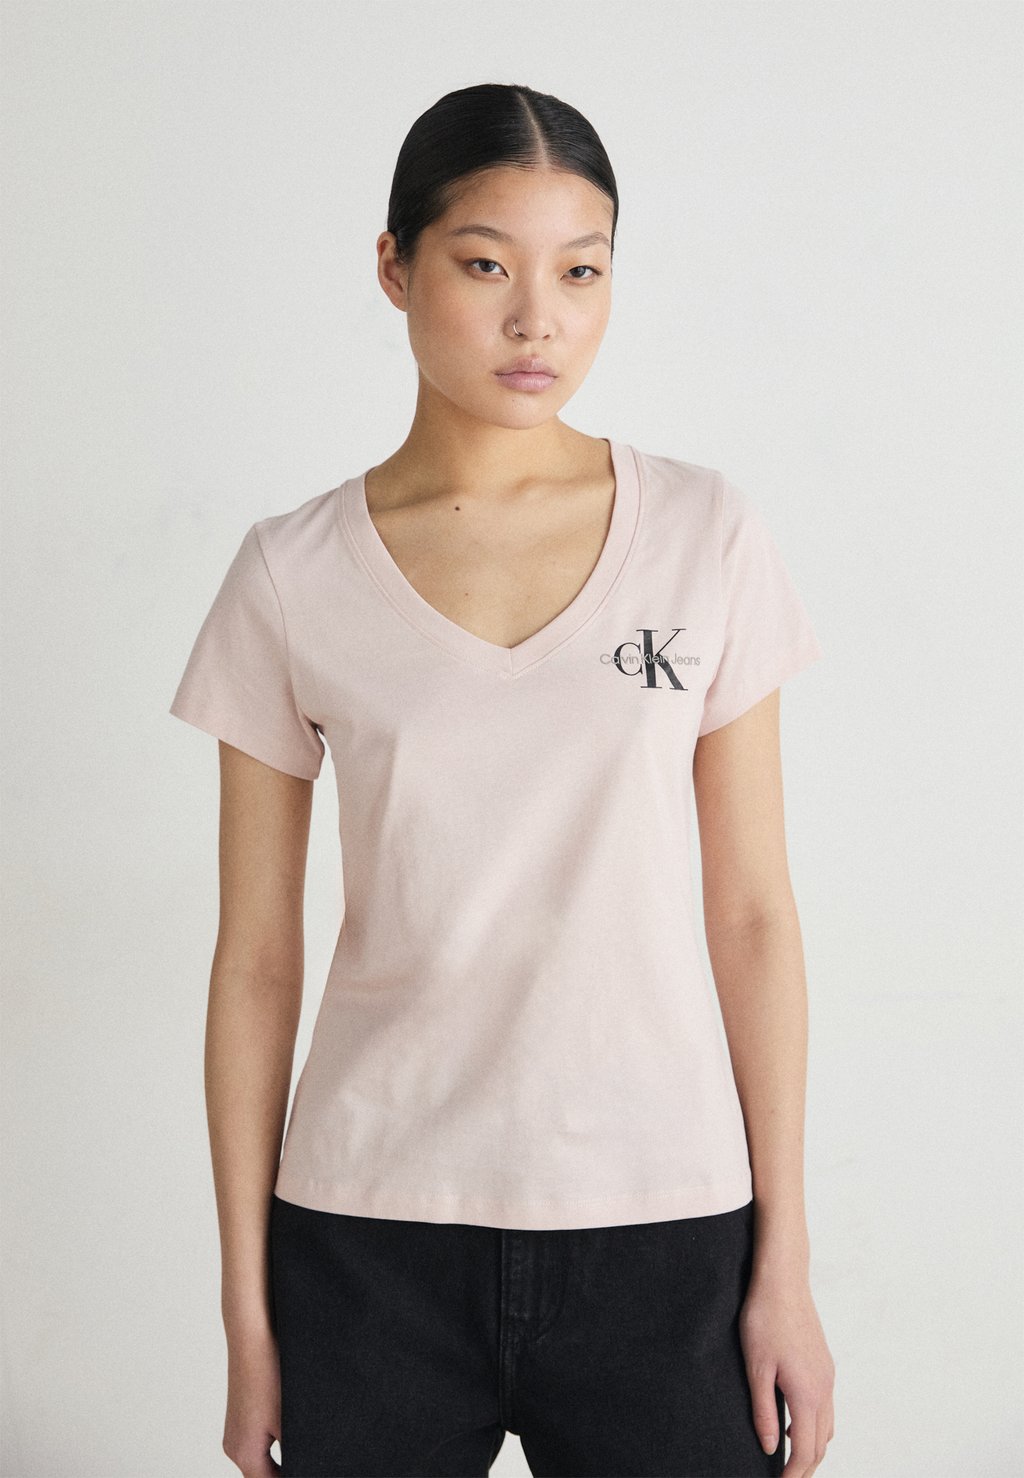 Базовая футболка MONOLOGO V NECK TEE Calvin Klein Jeans, розовый базовая футболка badge v neck tee calvin klein jeans plus цвет bright white